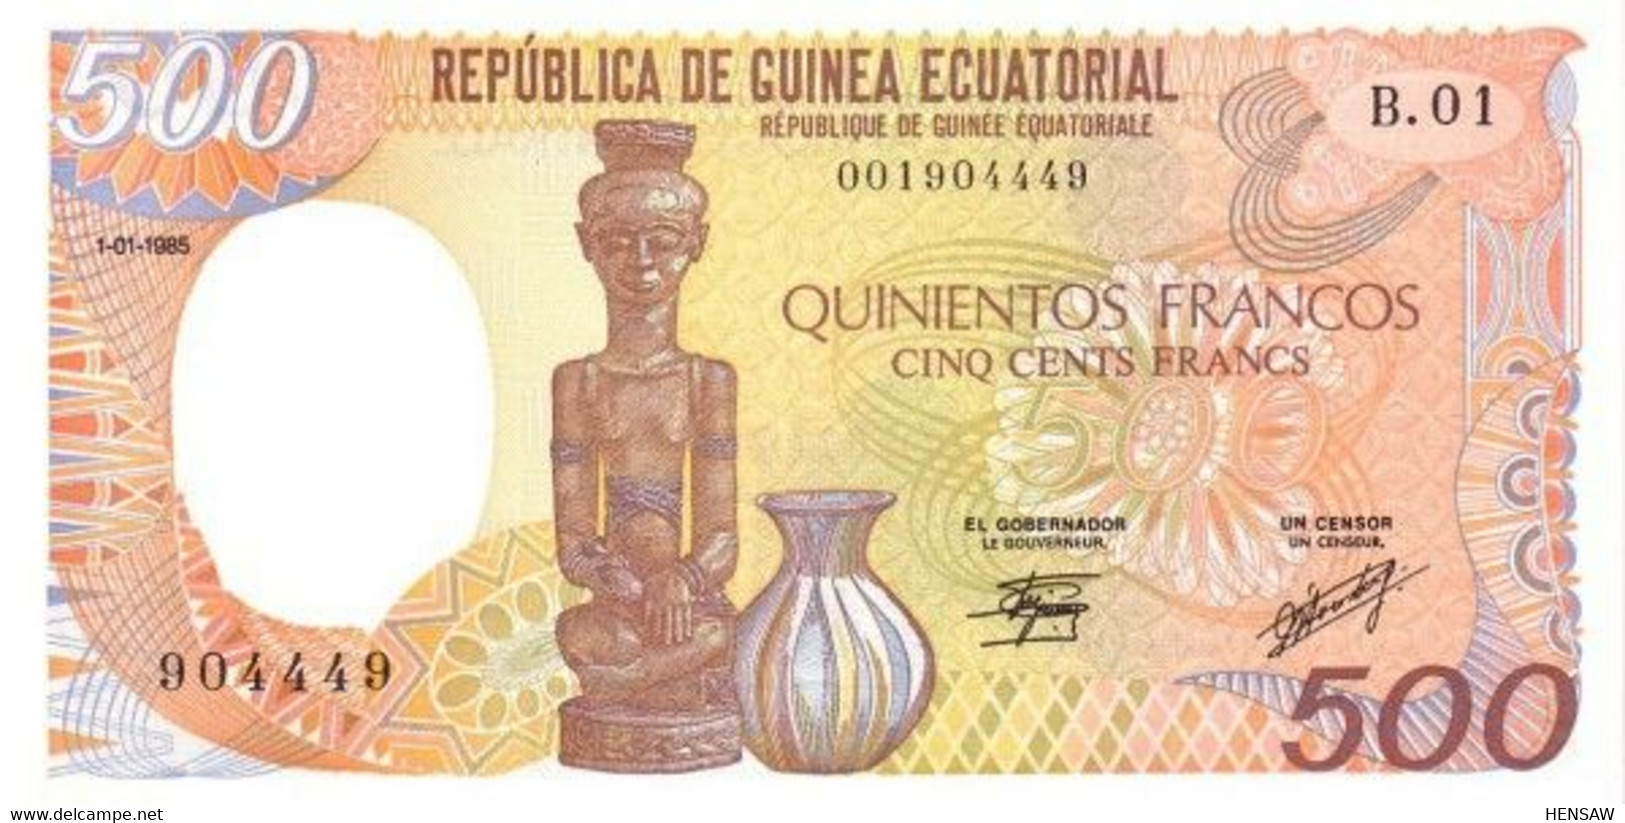 EQUATORIAL GUINEA 500 FRANCS 1985 P 20 UNC SC NUEVO - Guinée Equatoriale